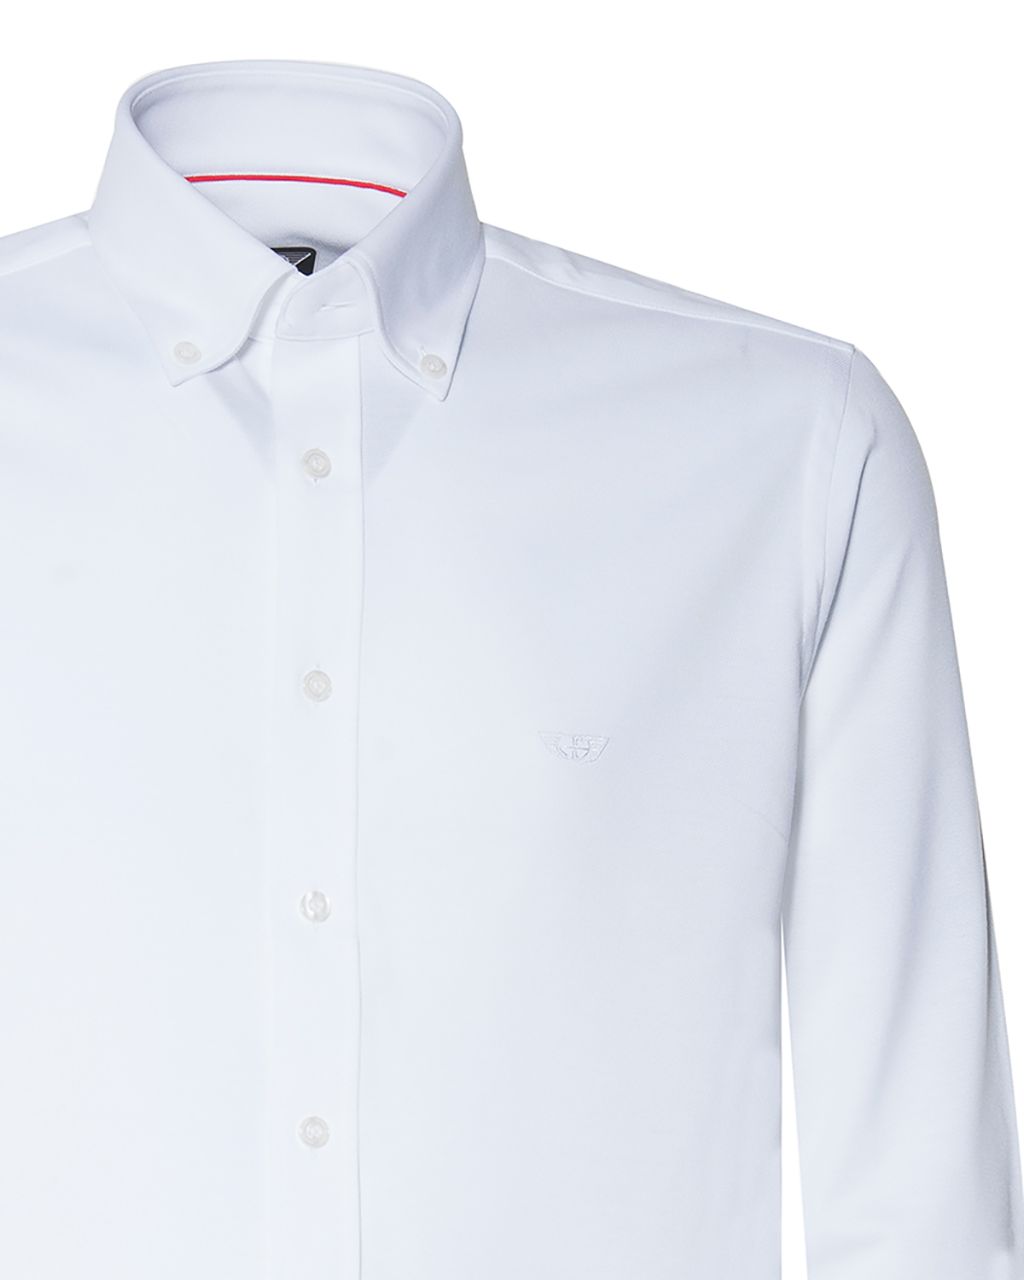 Donkervoort Overhemd LM Wit uni 059711-001-L